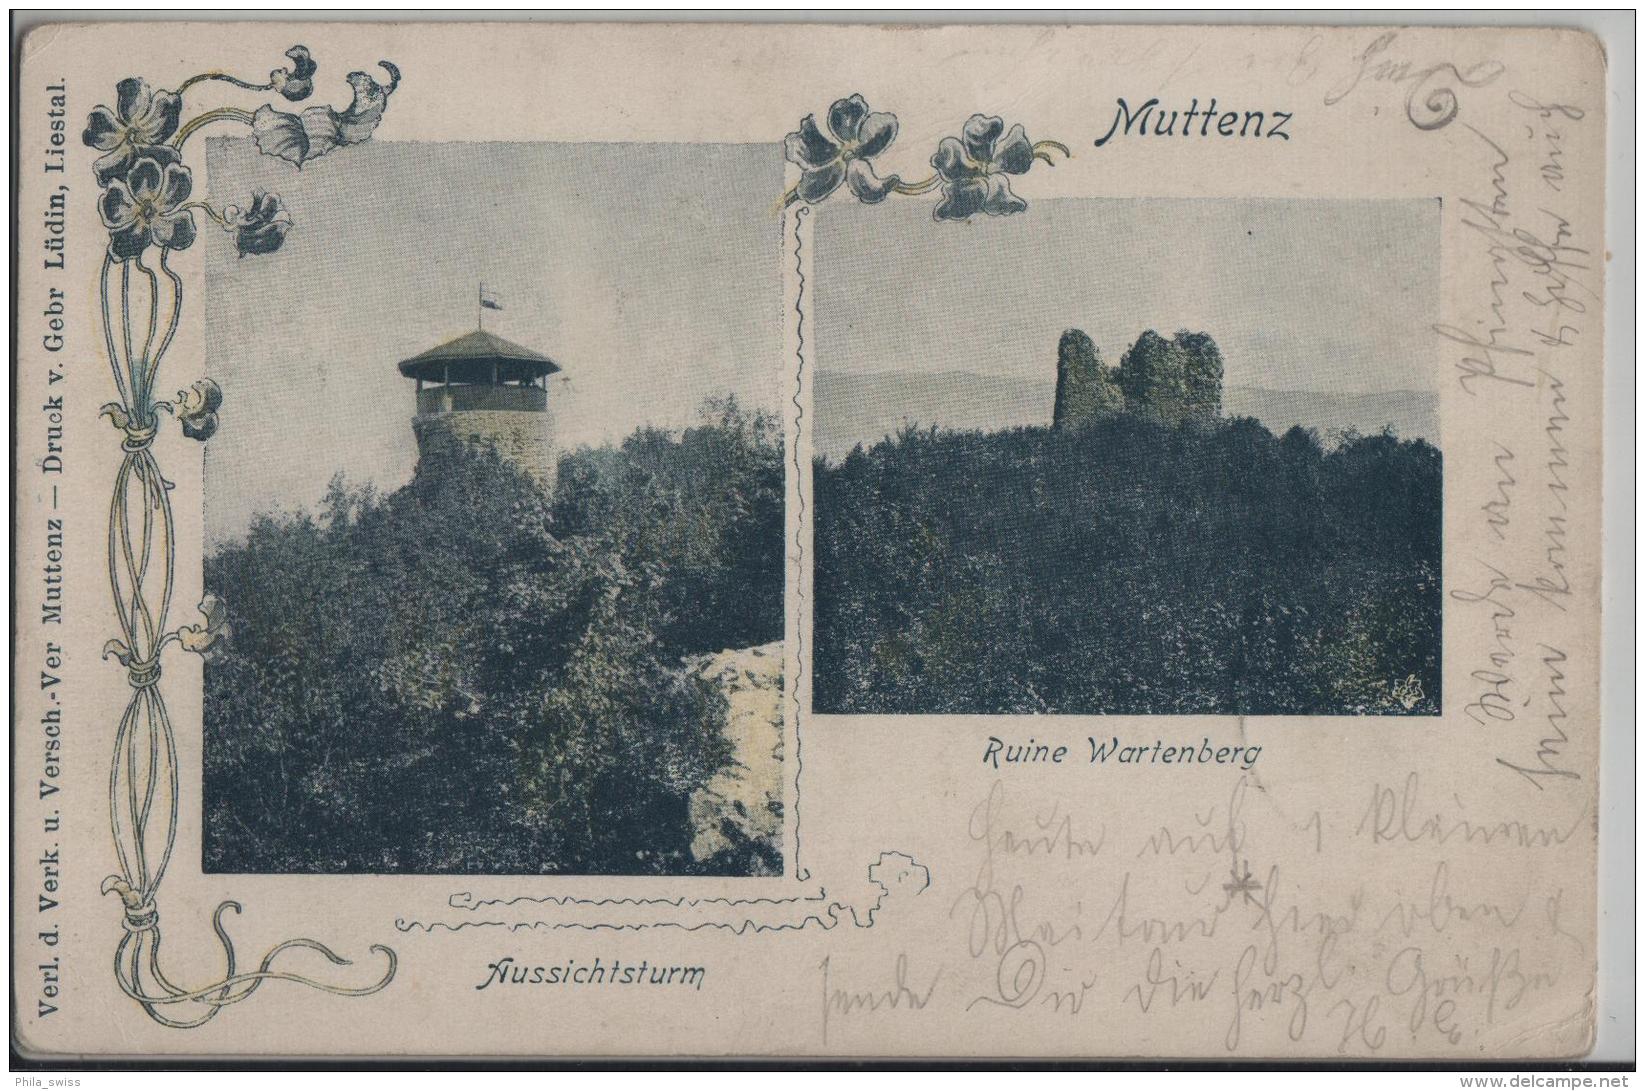 Muttenz - Aussichtsturm, Ruine Wartenberg - Stempel: Birsfelden - Birsfelden